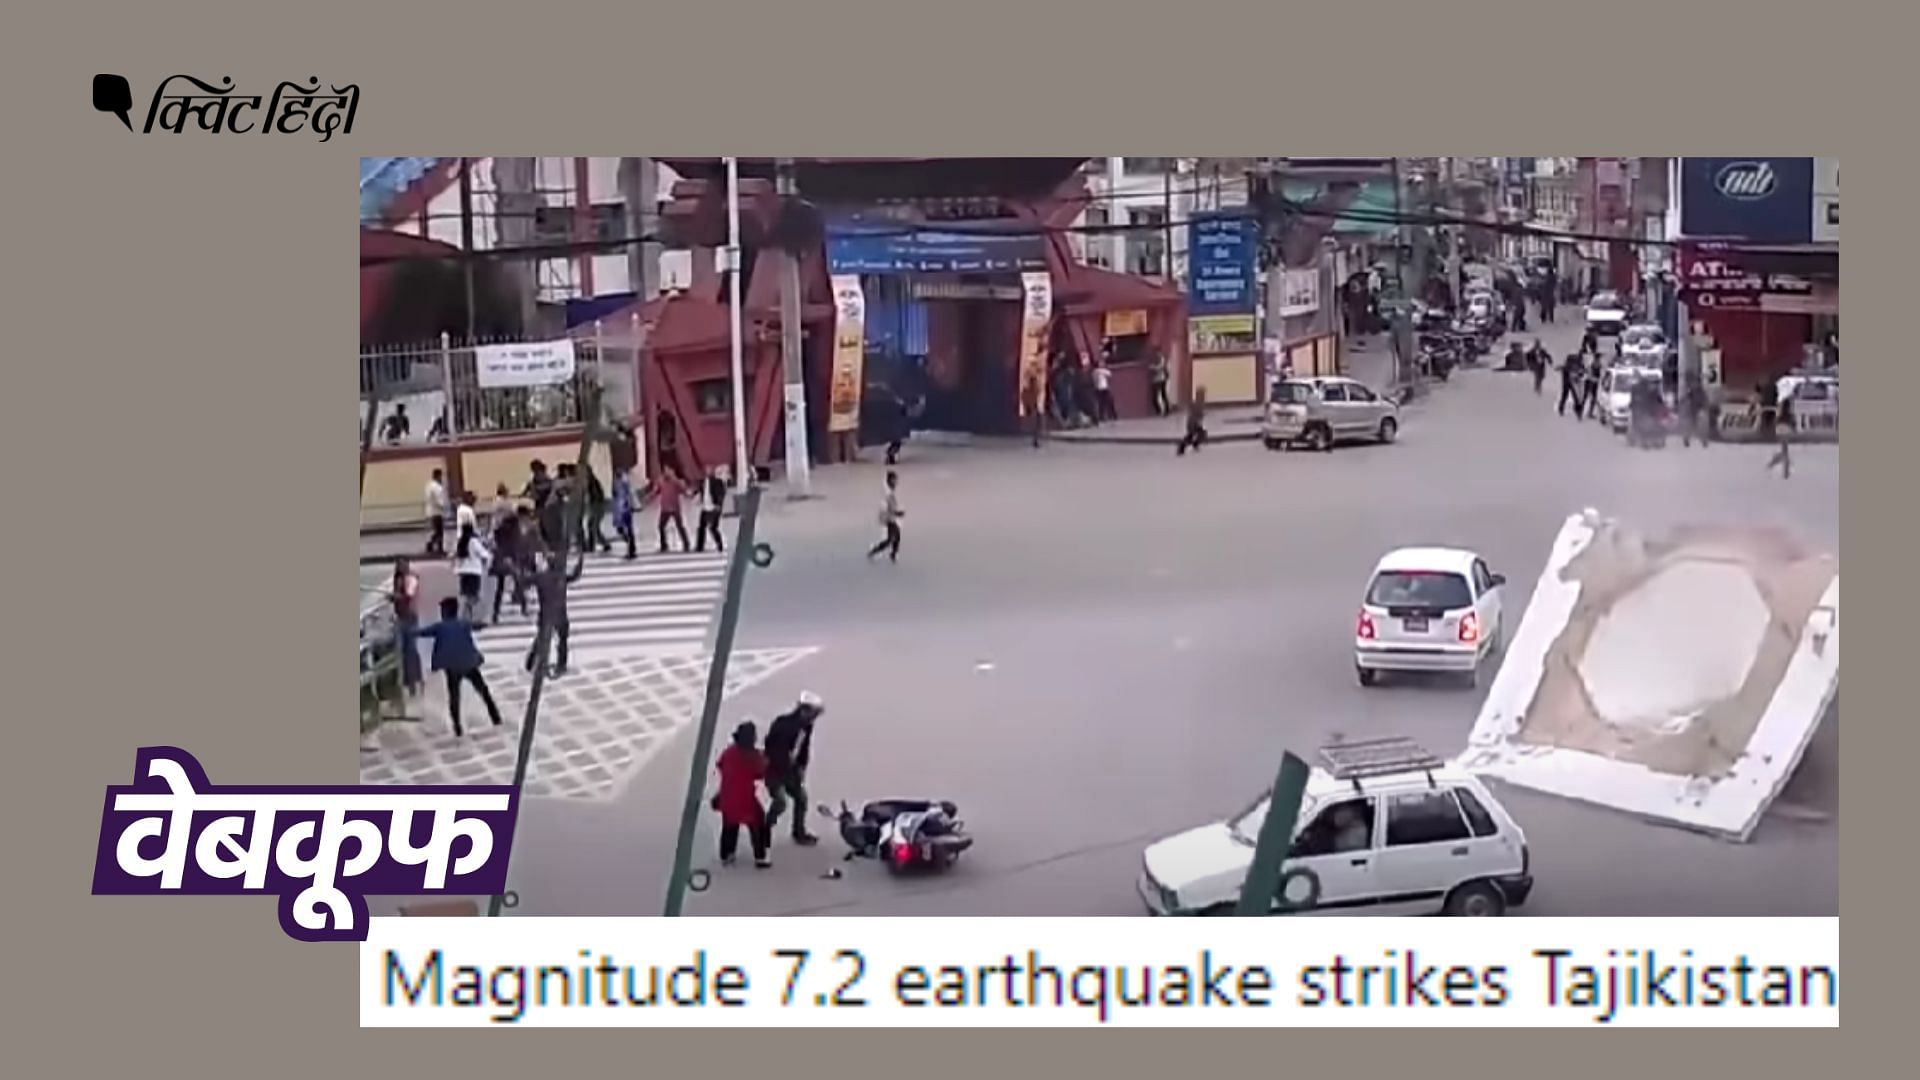 <div class="paragraphs"><p>वायरल वीडियो नेपाल में 2015 में आए भूकंप का है. तब देश भर में कई इमारतें और मंदिर ढह गए थे.</p></div>